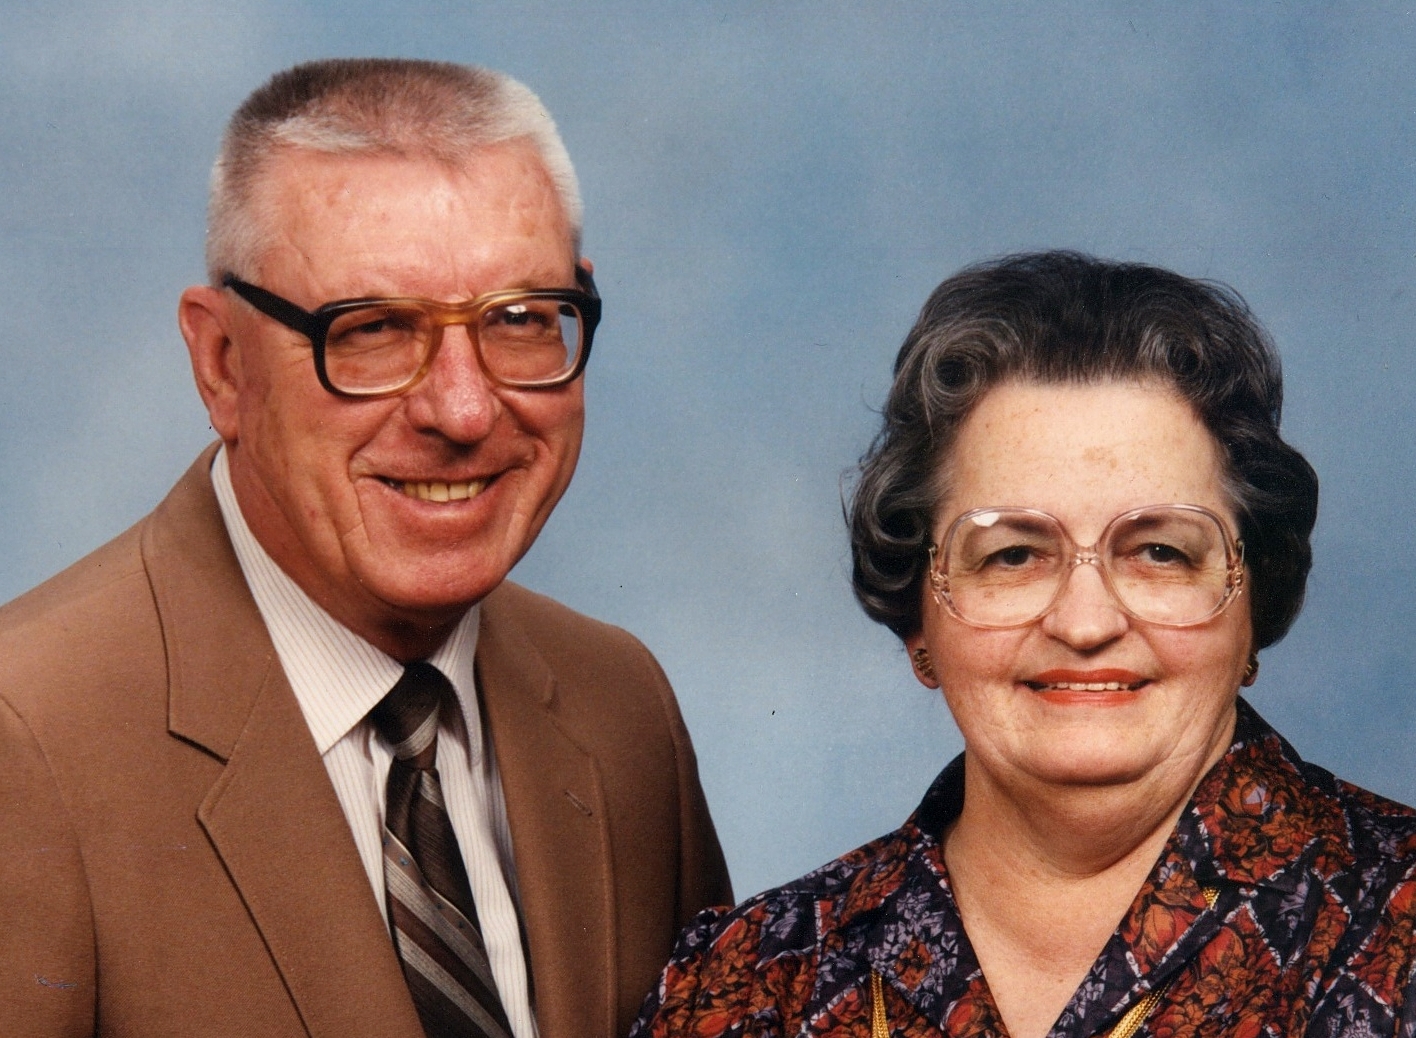 Joe and Mildred Pankaskie